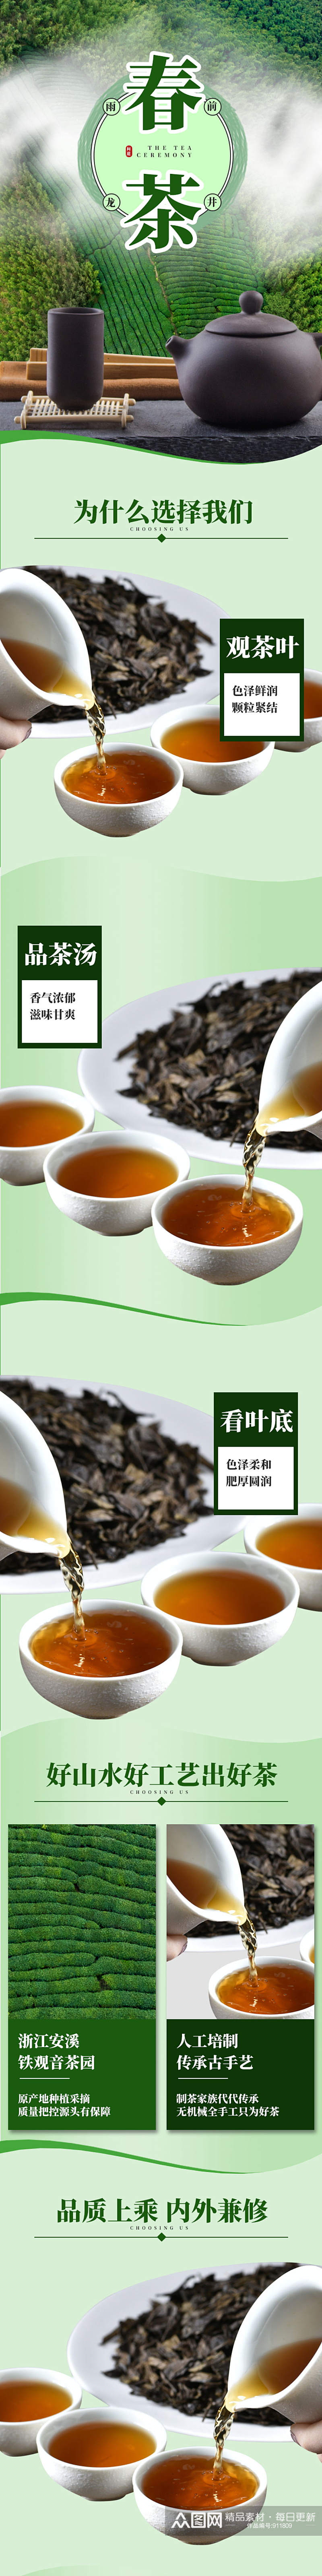 水墨风古典中国茶饮详情模板中国风绿色素材